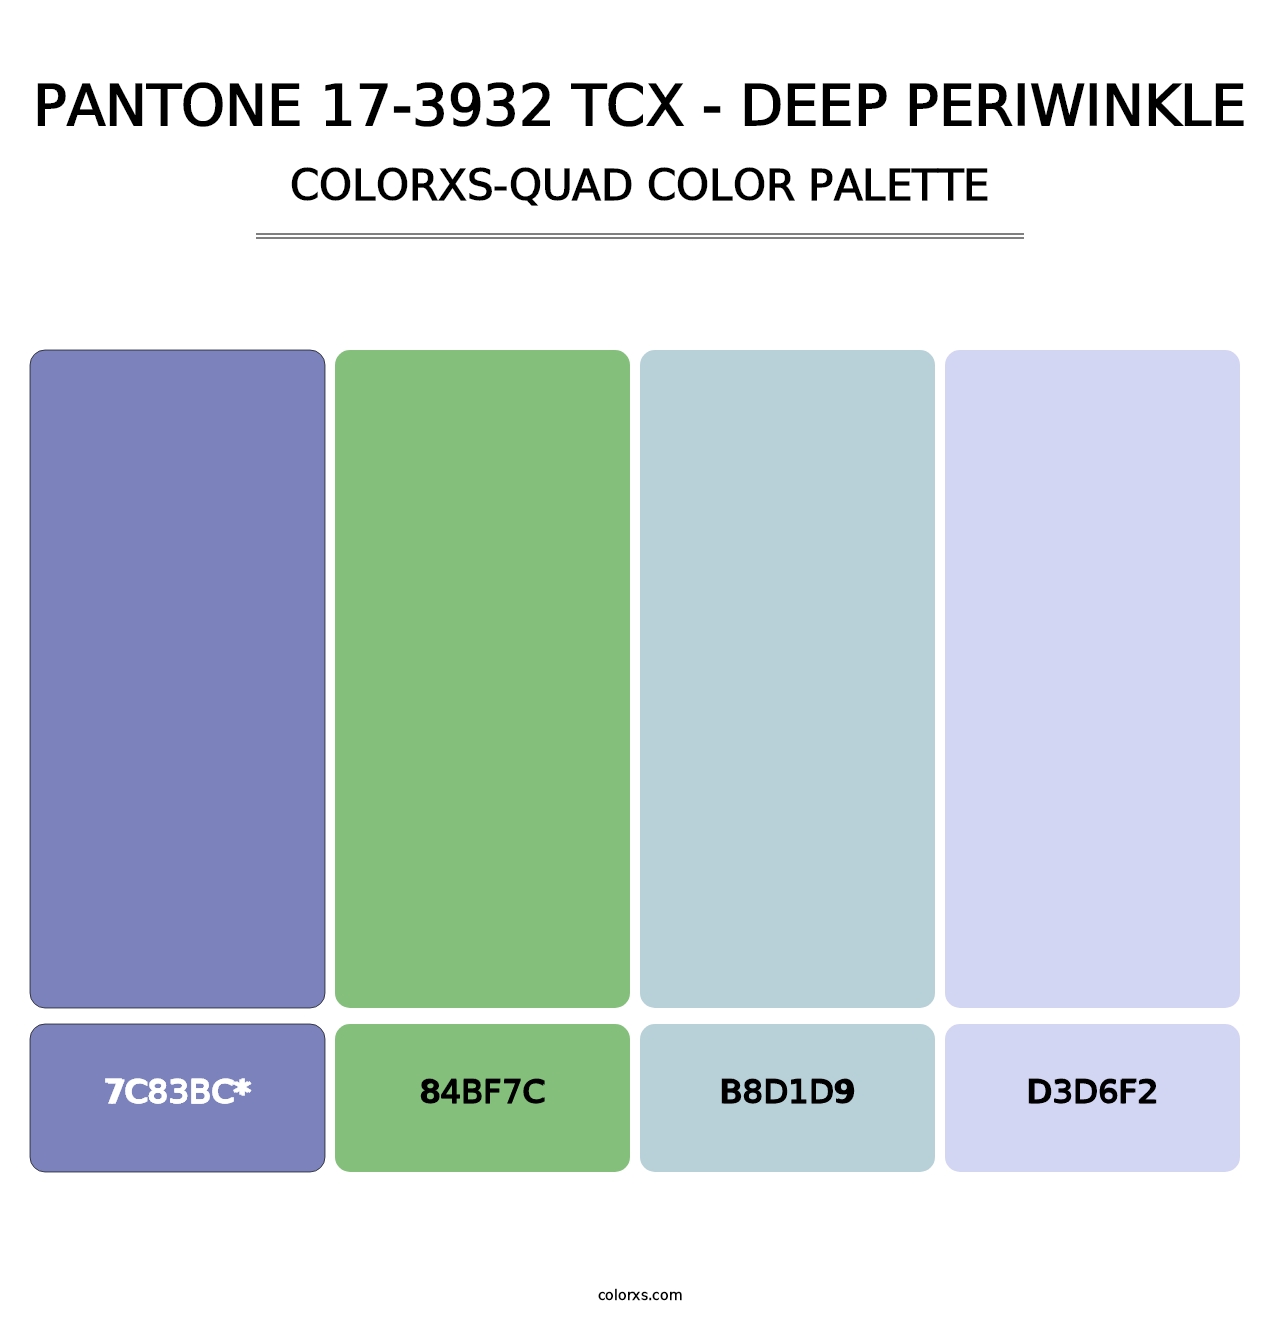 PANTONE 17-3932 TCX - Deep Periwinkle - Colorxs Quad Palette